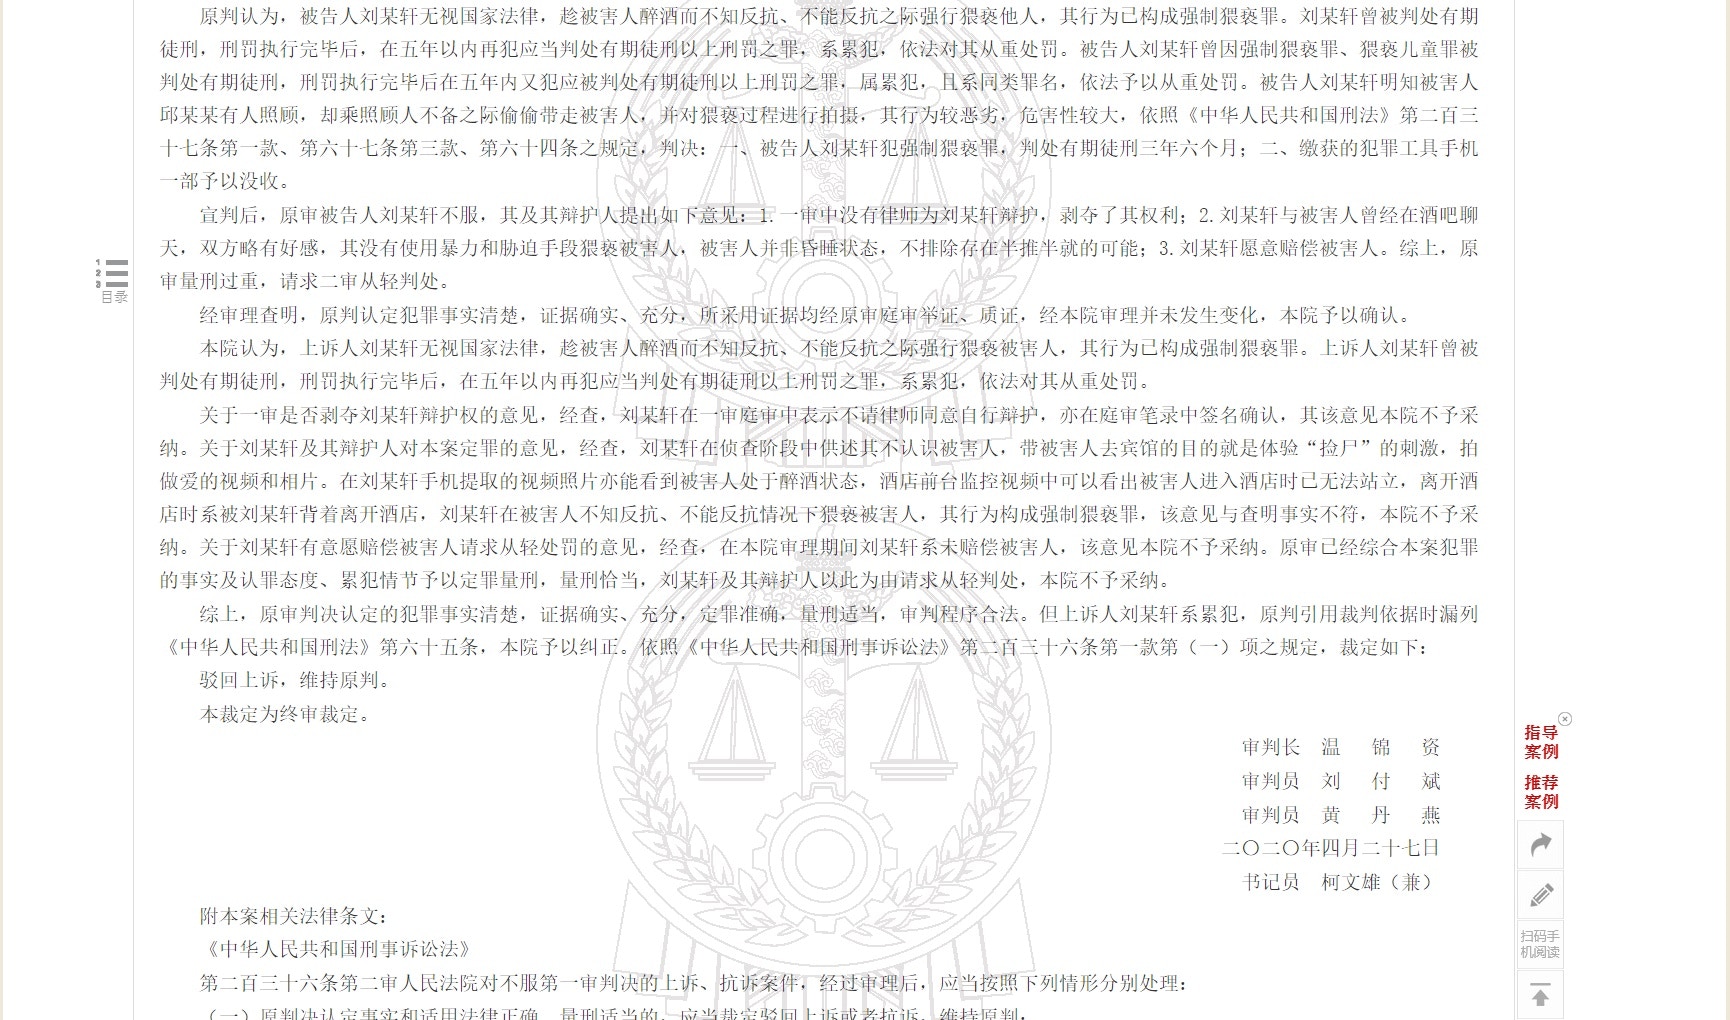 「中國裁判文書網」公布的一份二審刑事裁定書，顯示已有前科的劉馬車再犯「強制猥褻罪」，被判處有期徒刑3年6個月。（網頁截圖）